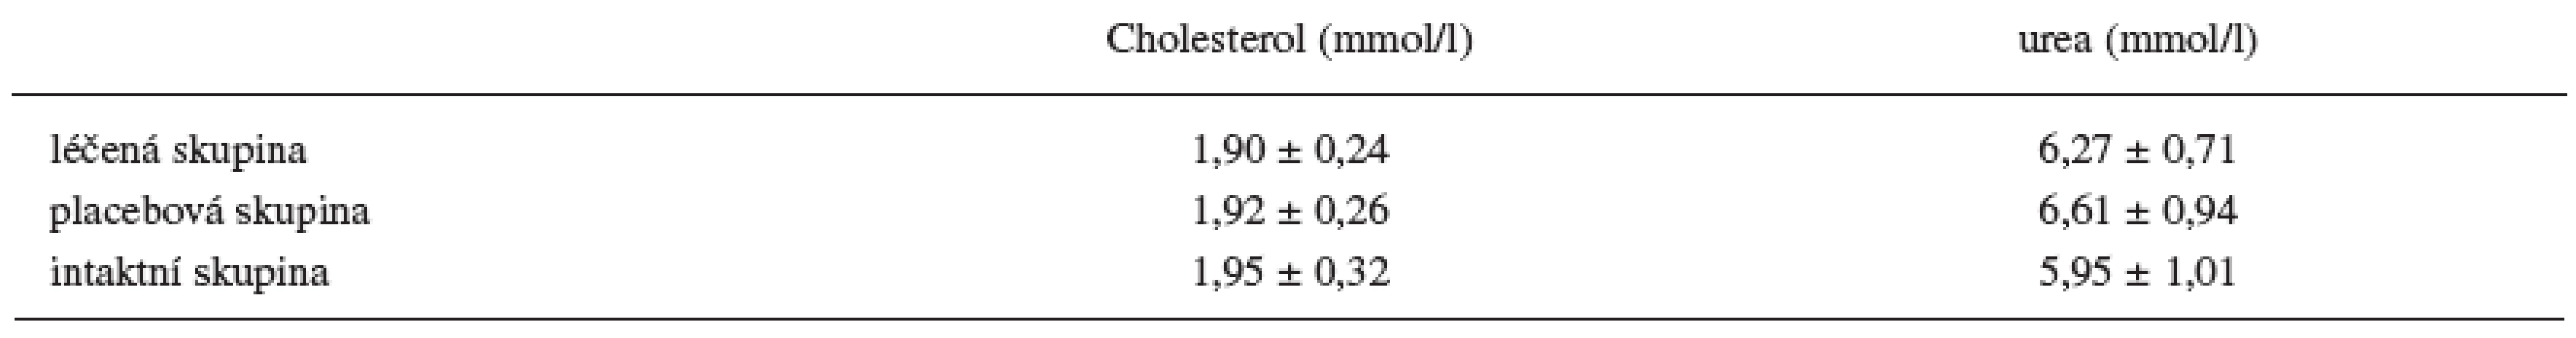 Hodnoty cholesterolu a urey v séru na konci experimentu